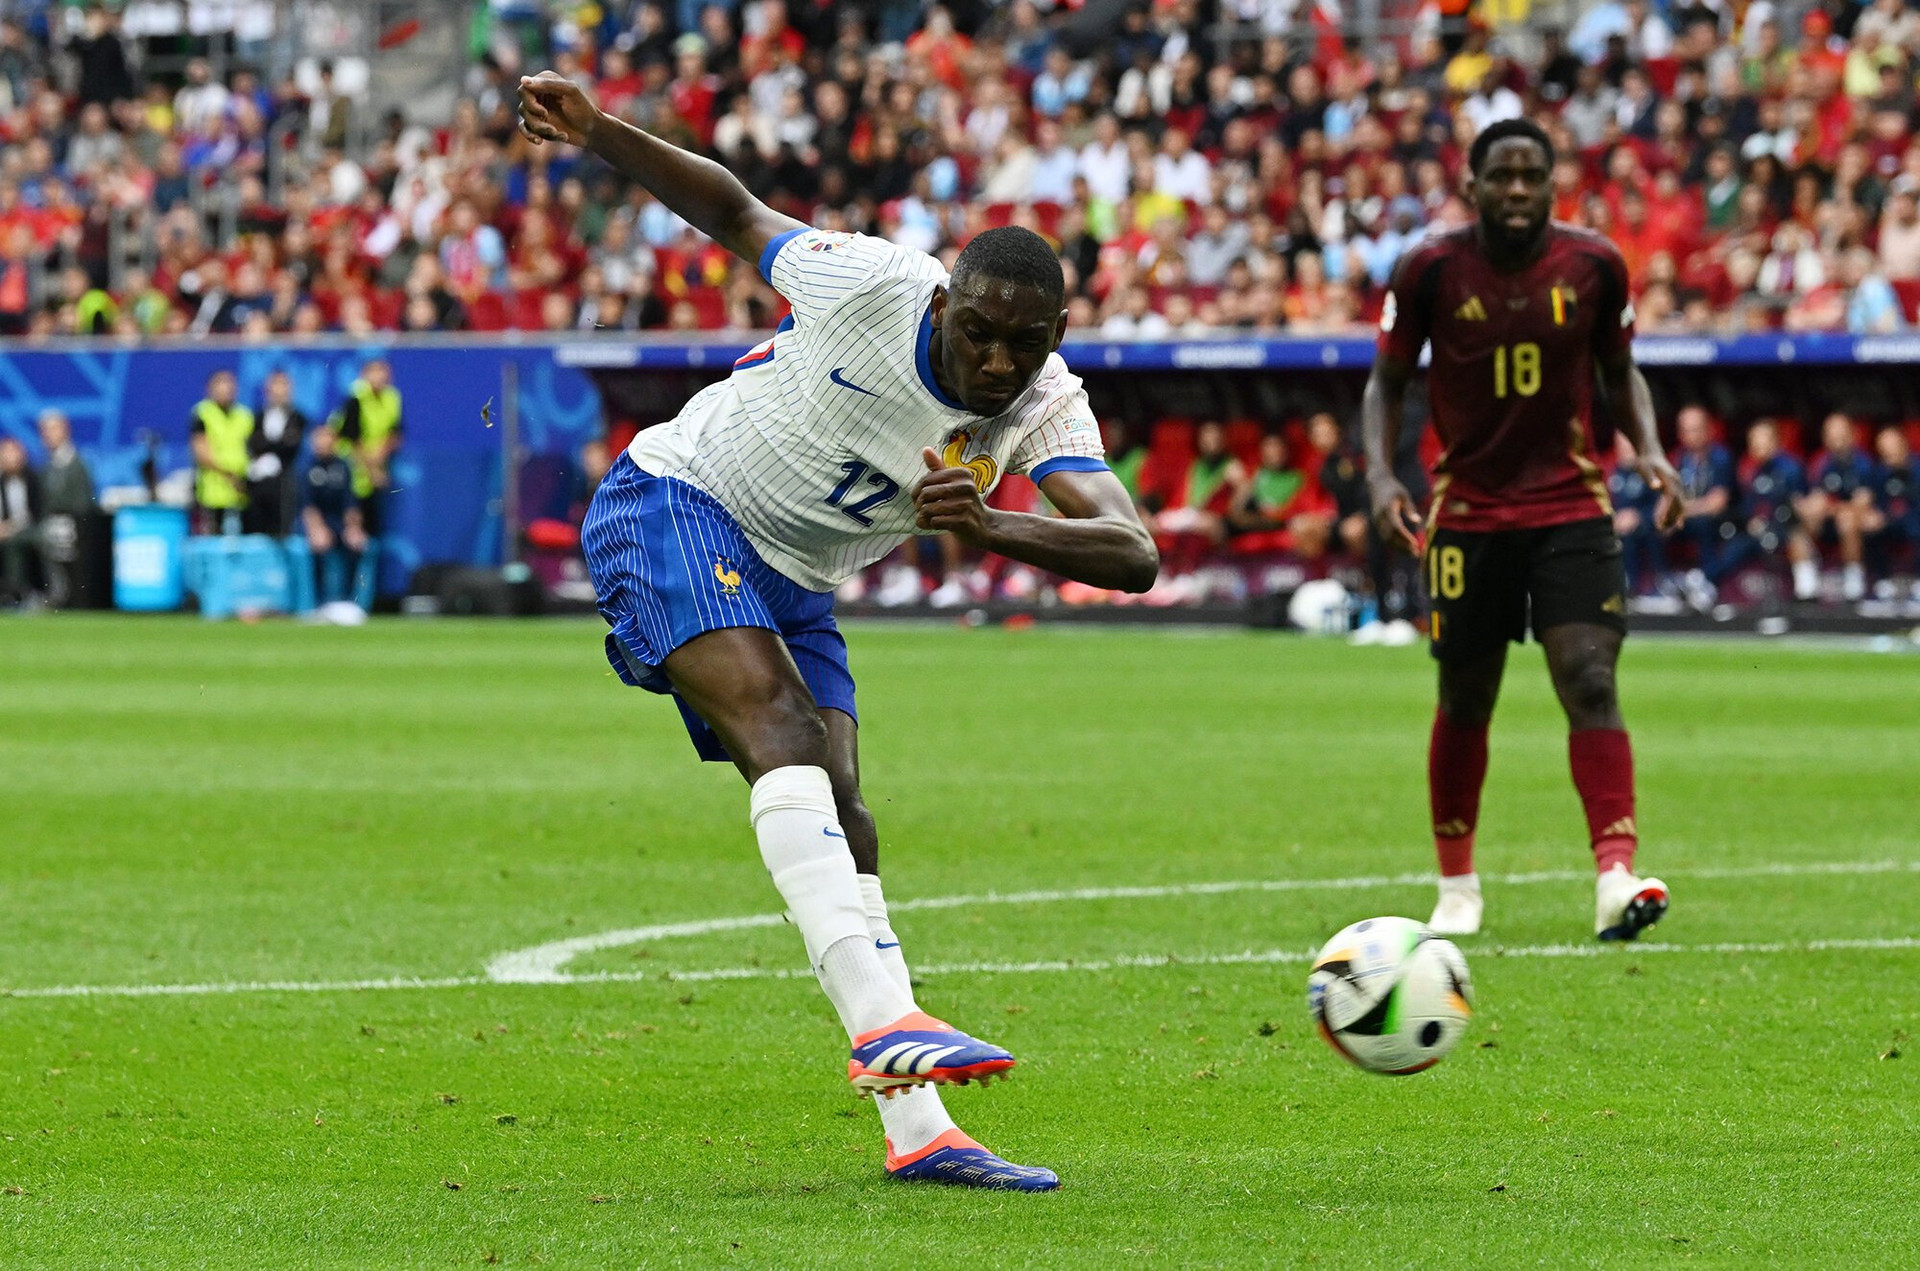 Cú sút của Muani giúp đội tuyển Pháp vào tứ kết. (Ảnh: Reuters)